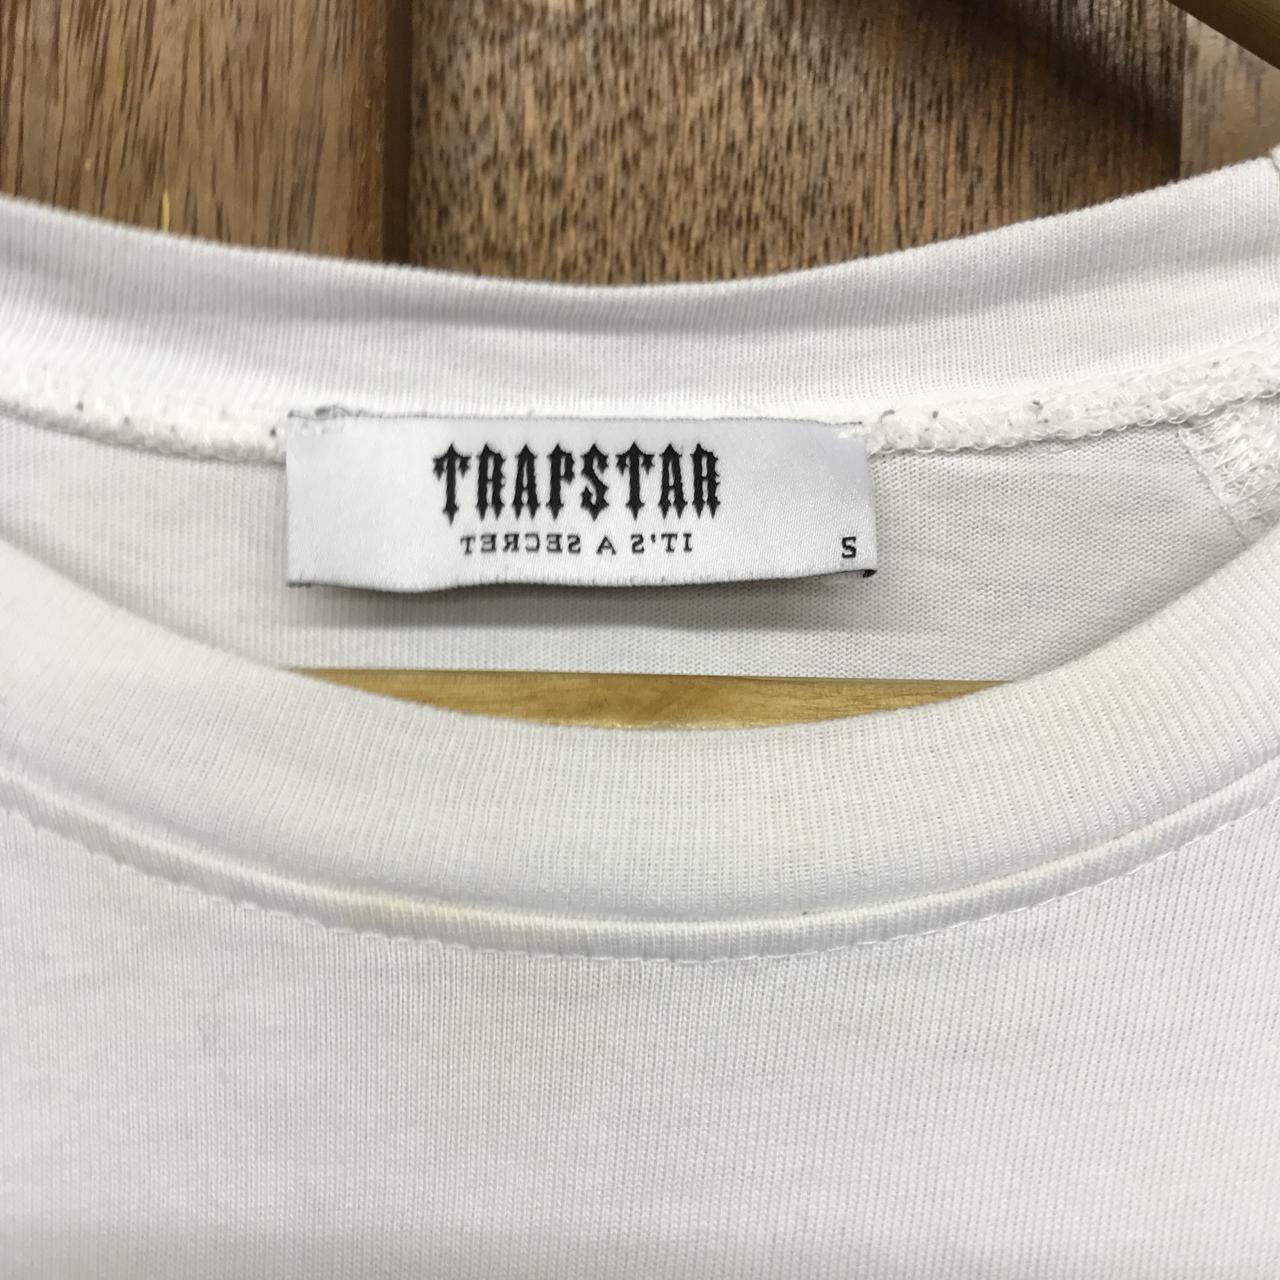 Trap star t shirt fits small - Depop